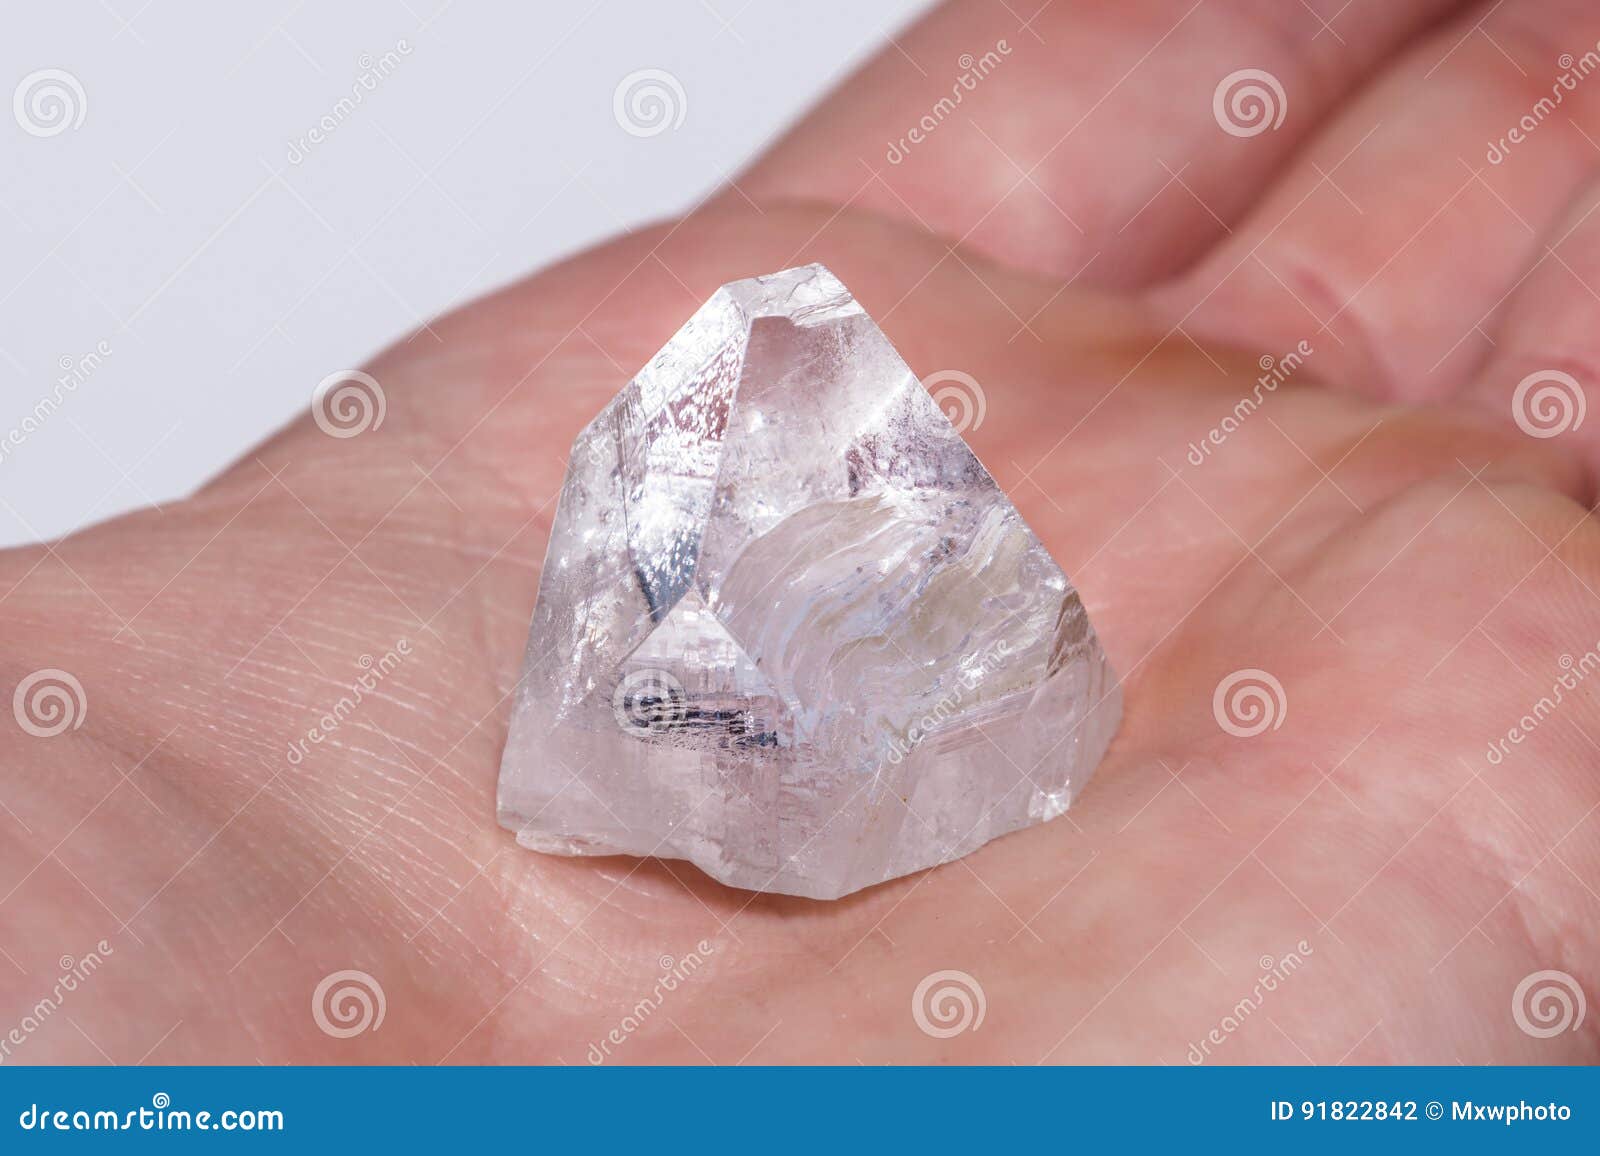 Дикость неограненные алмазы. Неограненный Алмаз. Белый Алмаз камень необработанный. Необработанный Алмаз на ладони.